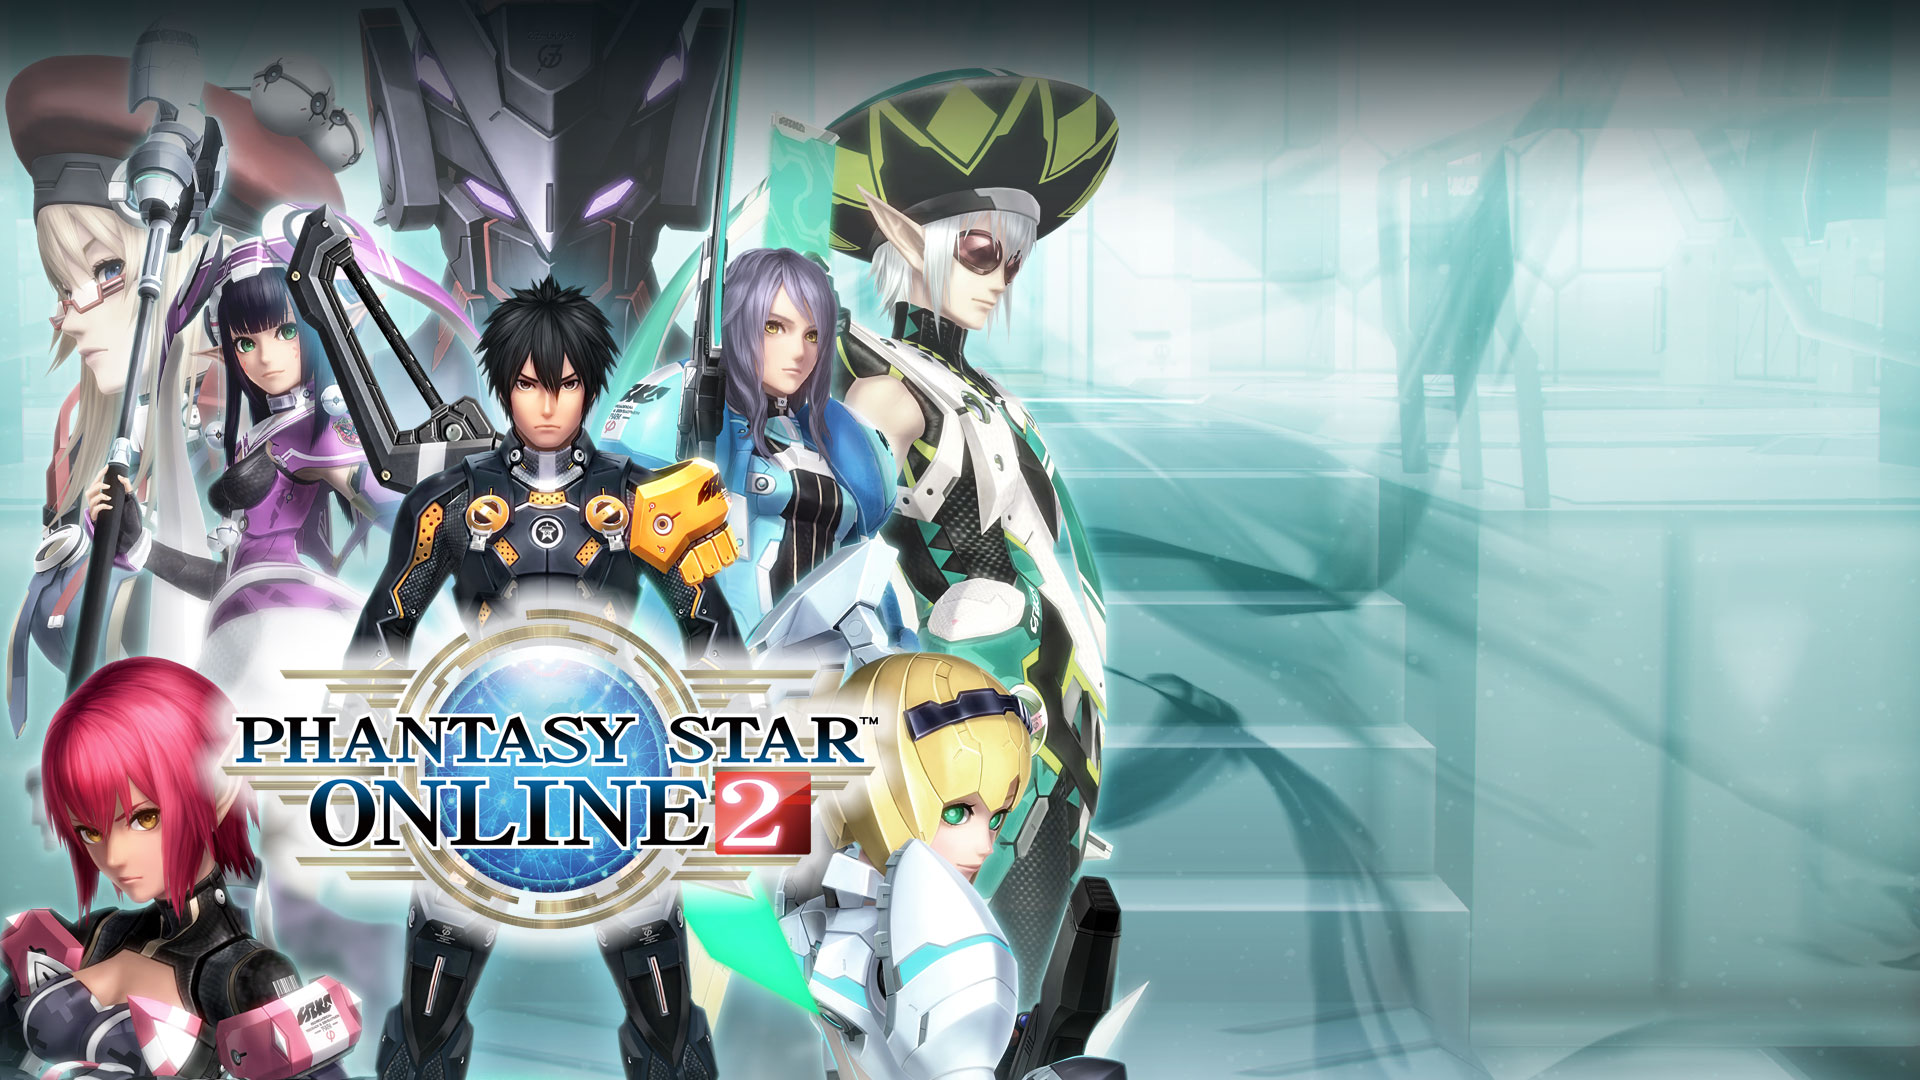 Phantasy Star Online 2: composición de imágenes de personajes del juego.